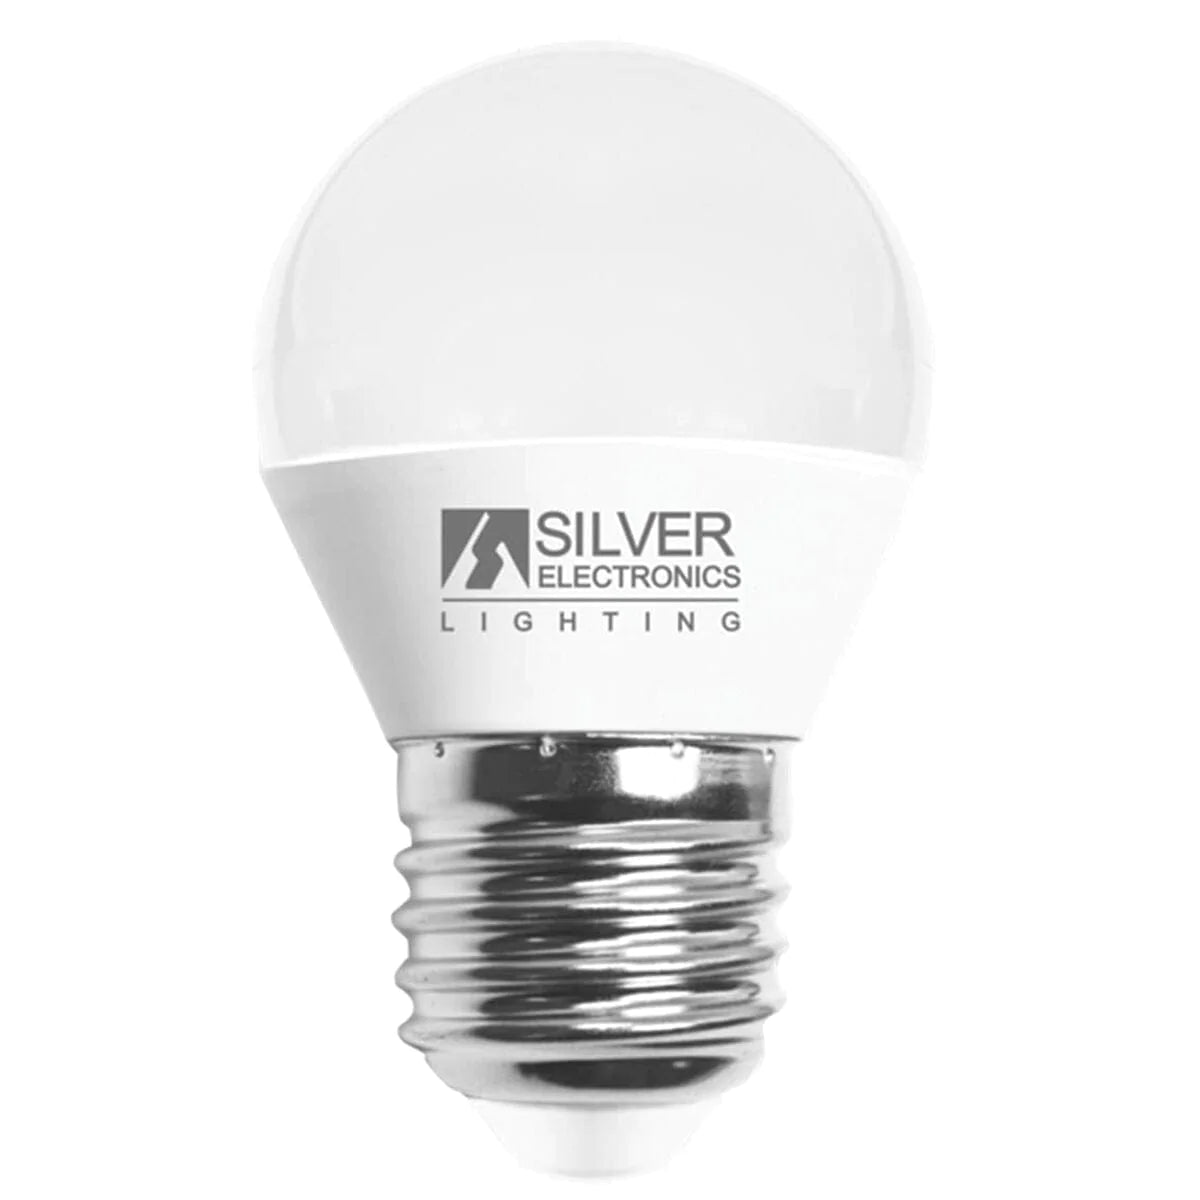 Silver Electronics Heim | Garten > Dekoration und Beleuchtung > LED-Beleuchtung LED-Lampe Silver Electronics ESFERICA 963627 E27 6W 2700k